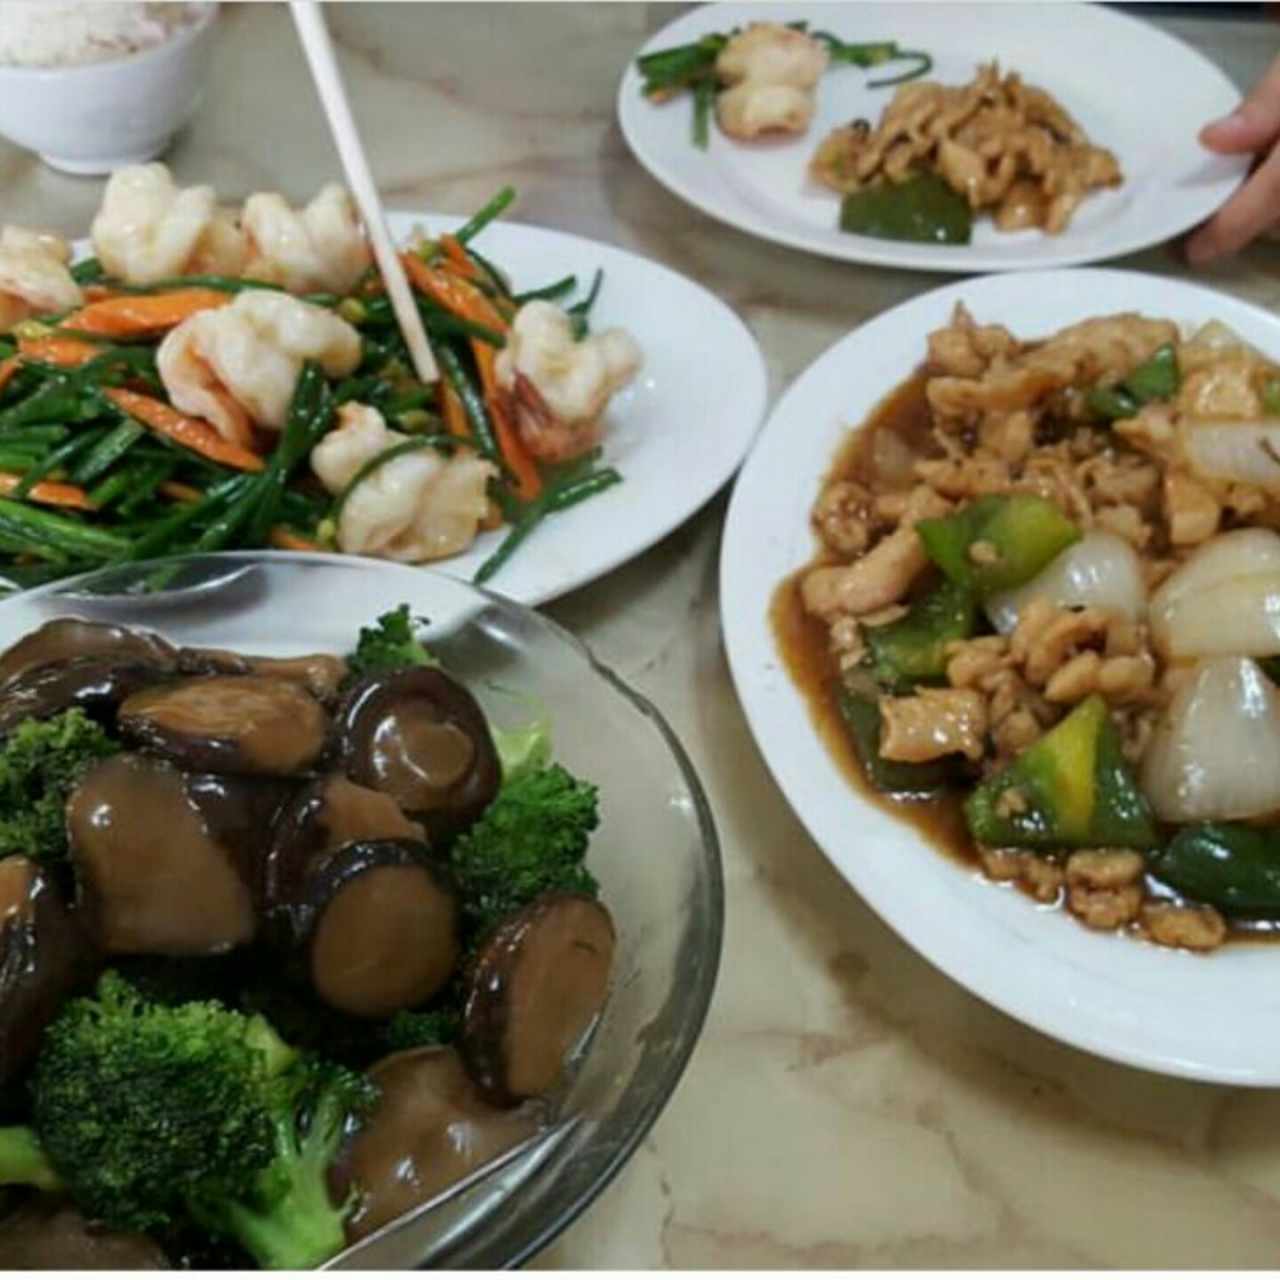 hongos chinos con brocoli, langostinos con cebollina en flor, pollo en salsa de frijol negro. arroz de jazmin.